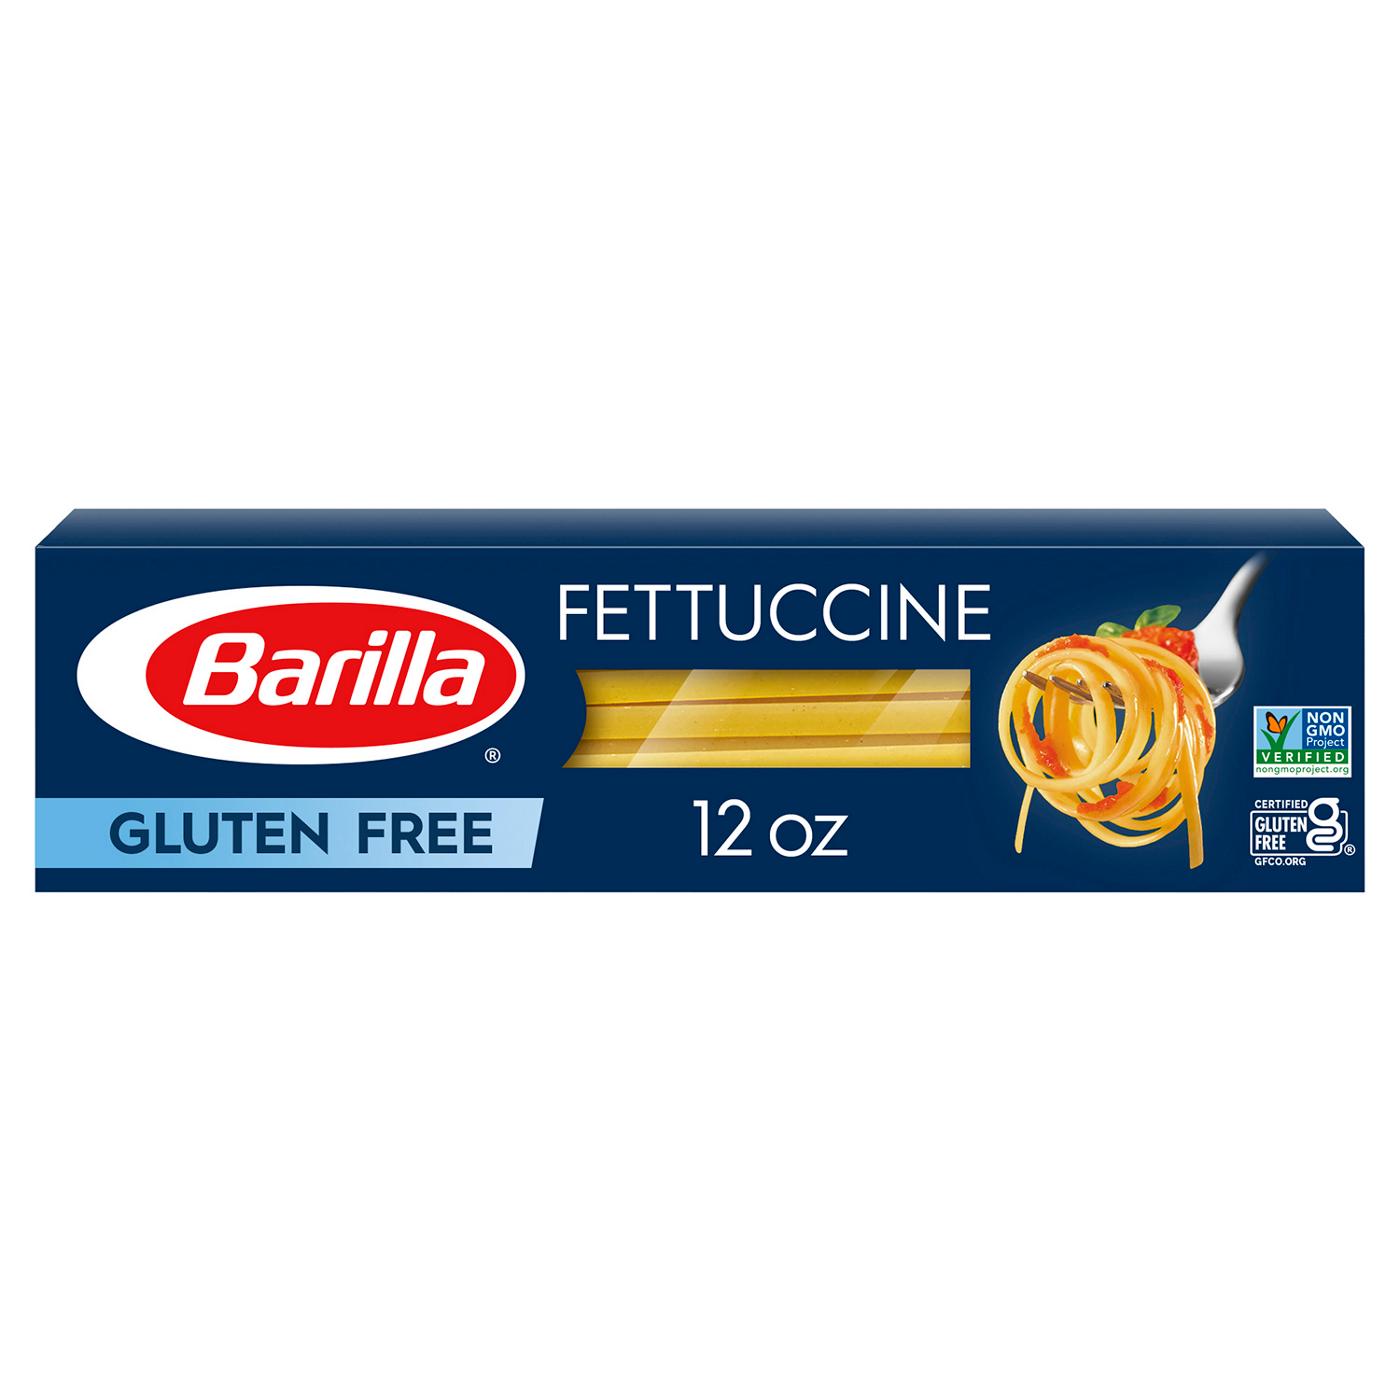 Barilla Gluten Free Fettuccine Pasta; image 1 of 7